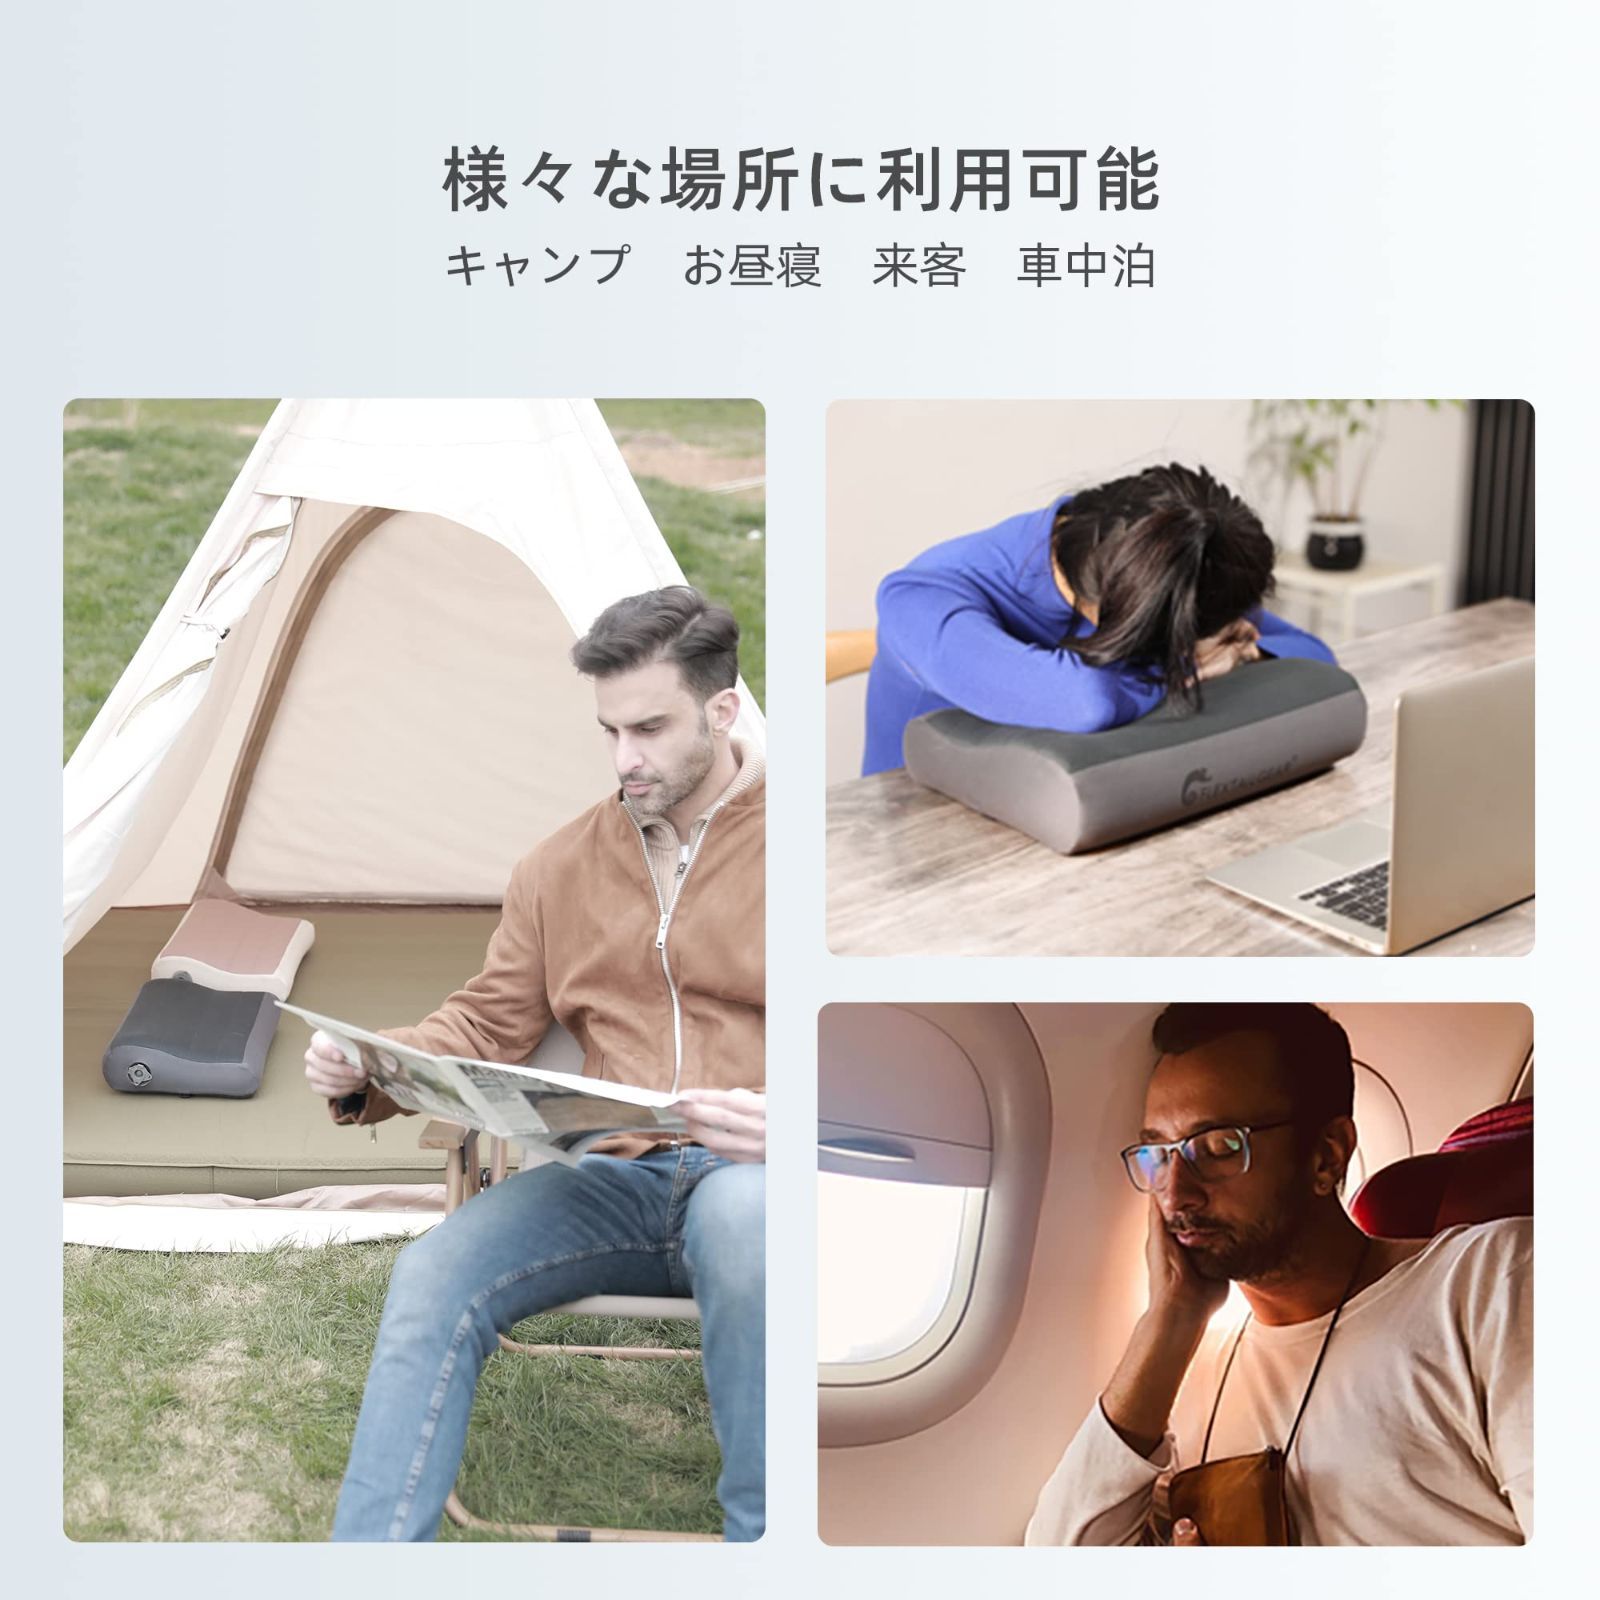 色: グレー】FLEXTAILGEAR エアーピロー キャンプ枕 持ち運び便利 オシャレ✾shop✾ メルカリ